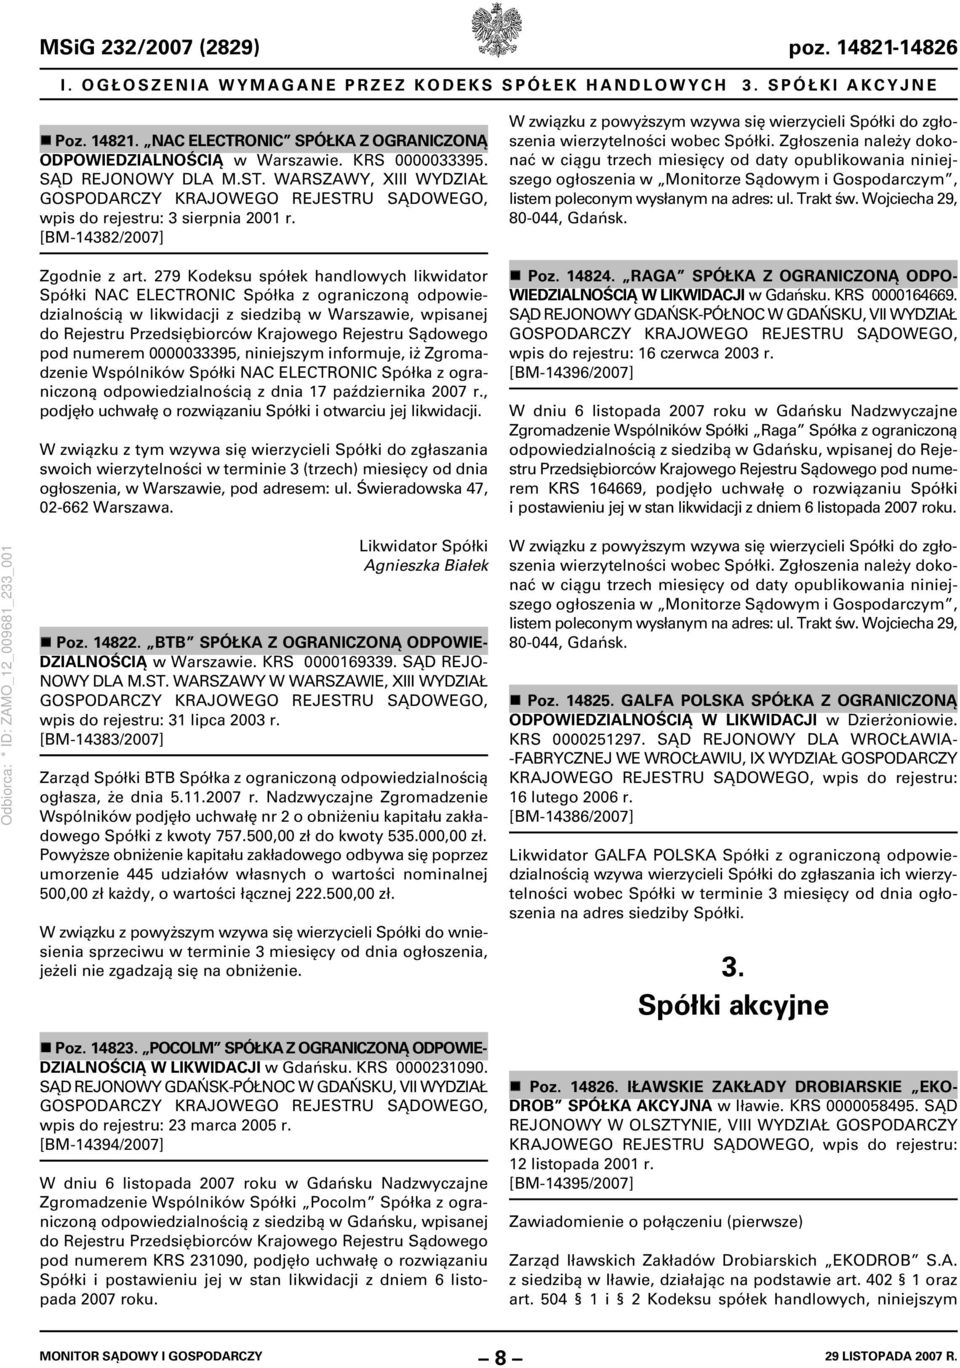 279 Kodeksu spółek handlowych likwidator Spółki NAC ELECTRONIC Spółka z ograniczoną odpowiedzialnością w likwidacji z siedzibą w Warszawie, wpisanej do Rejestru Przedsiębiorców Krajowego Rejestru